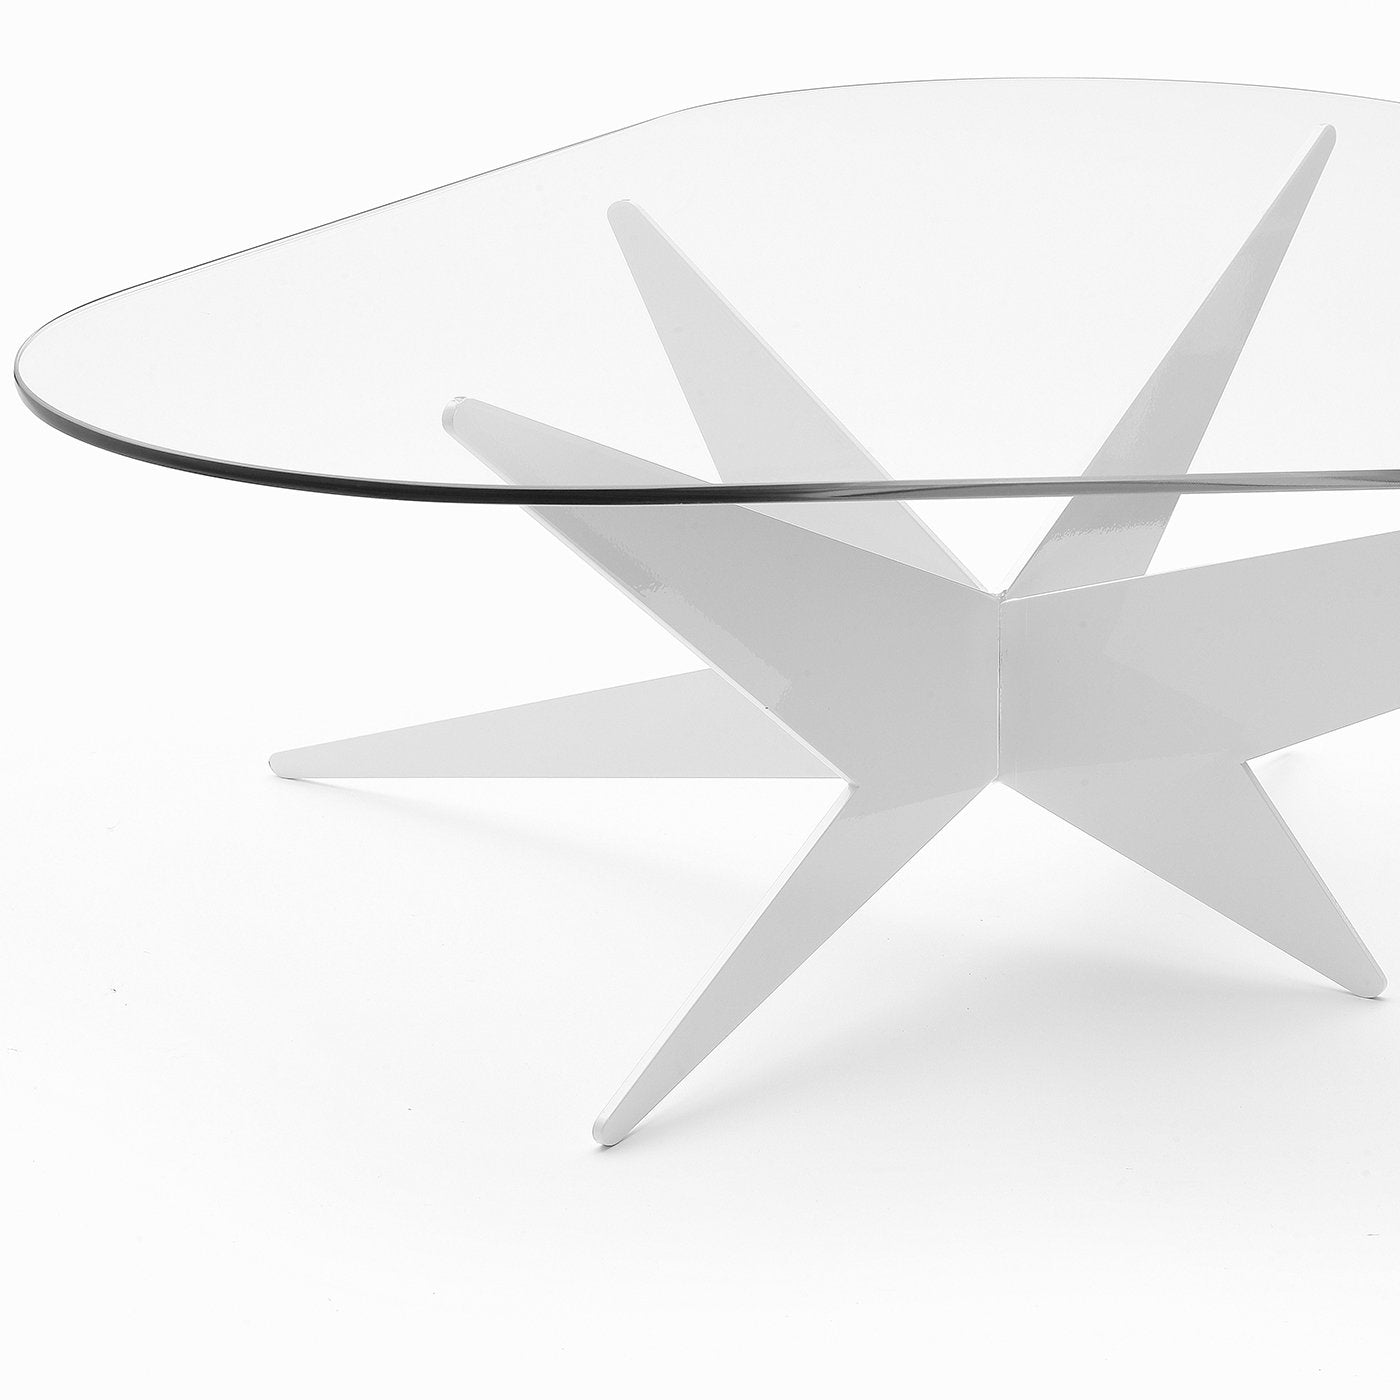 Star Triangular Coffee Table by Antonio Pio Saracino - Alternative view 2